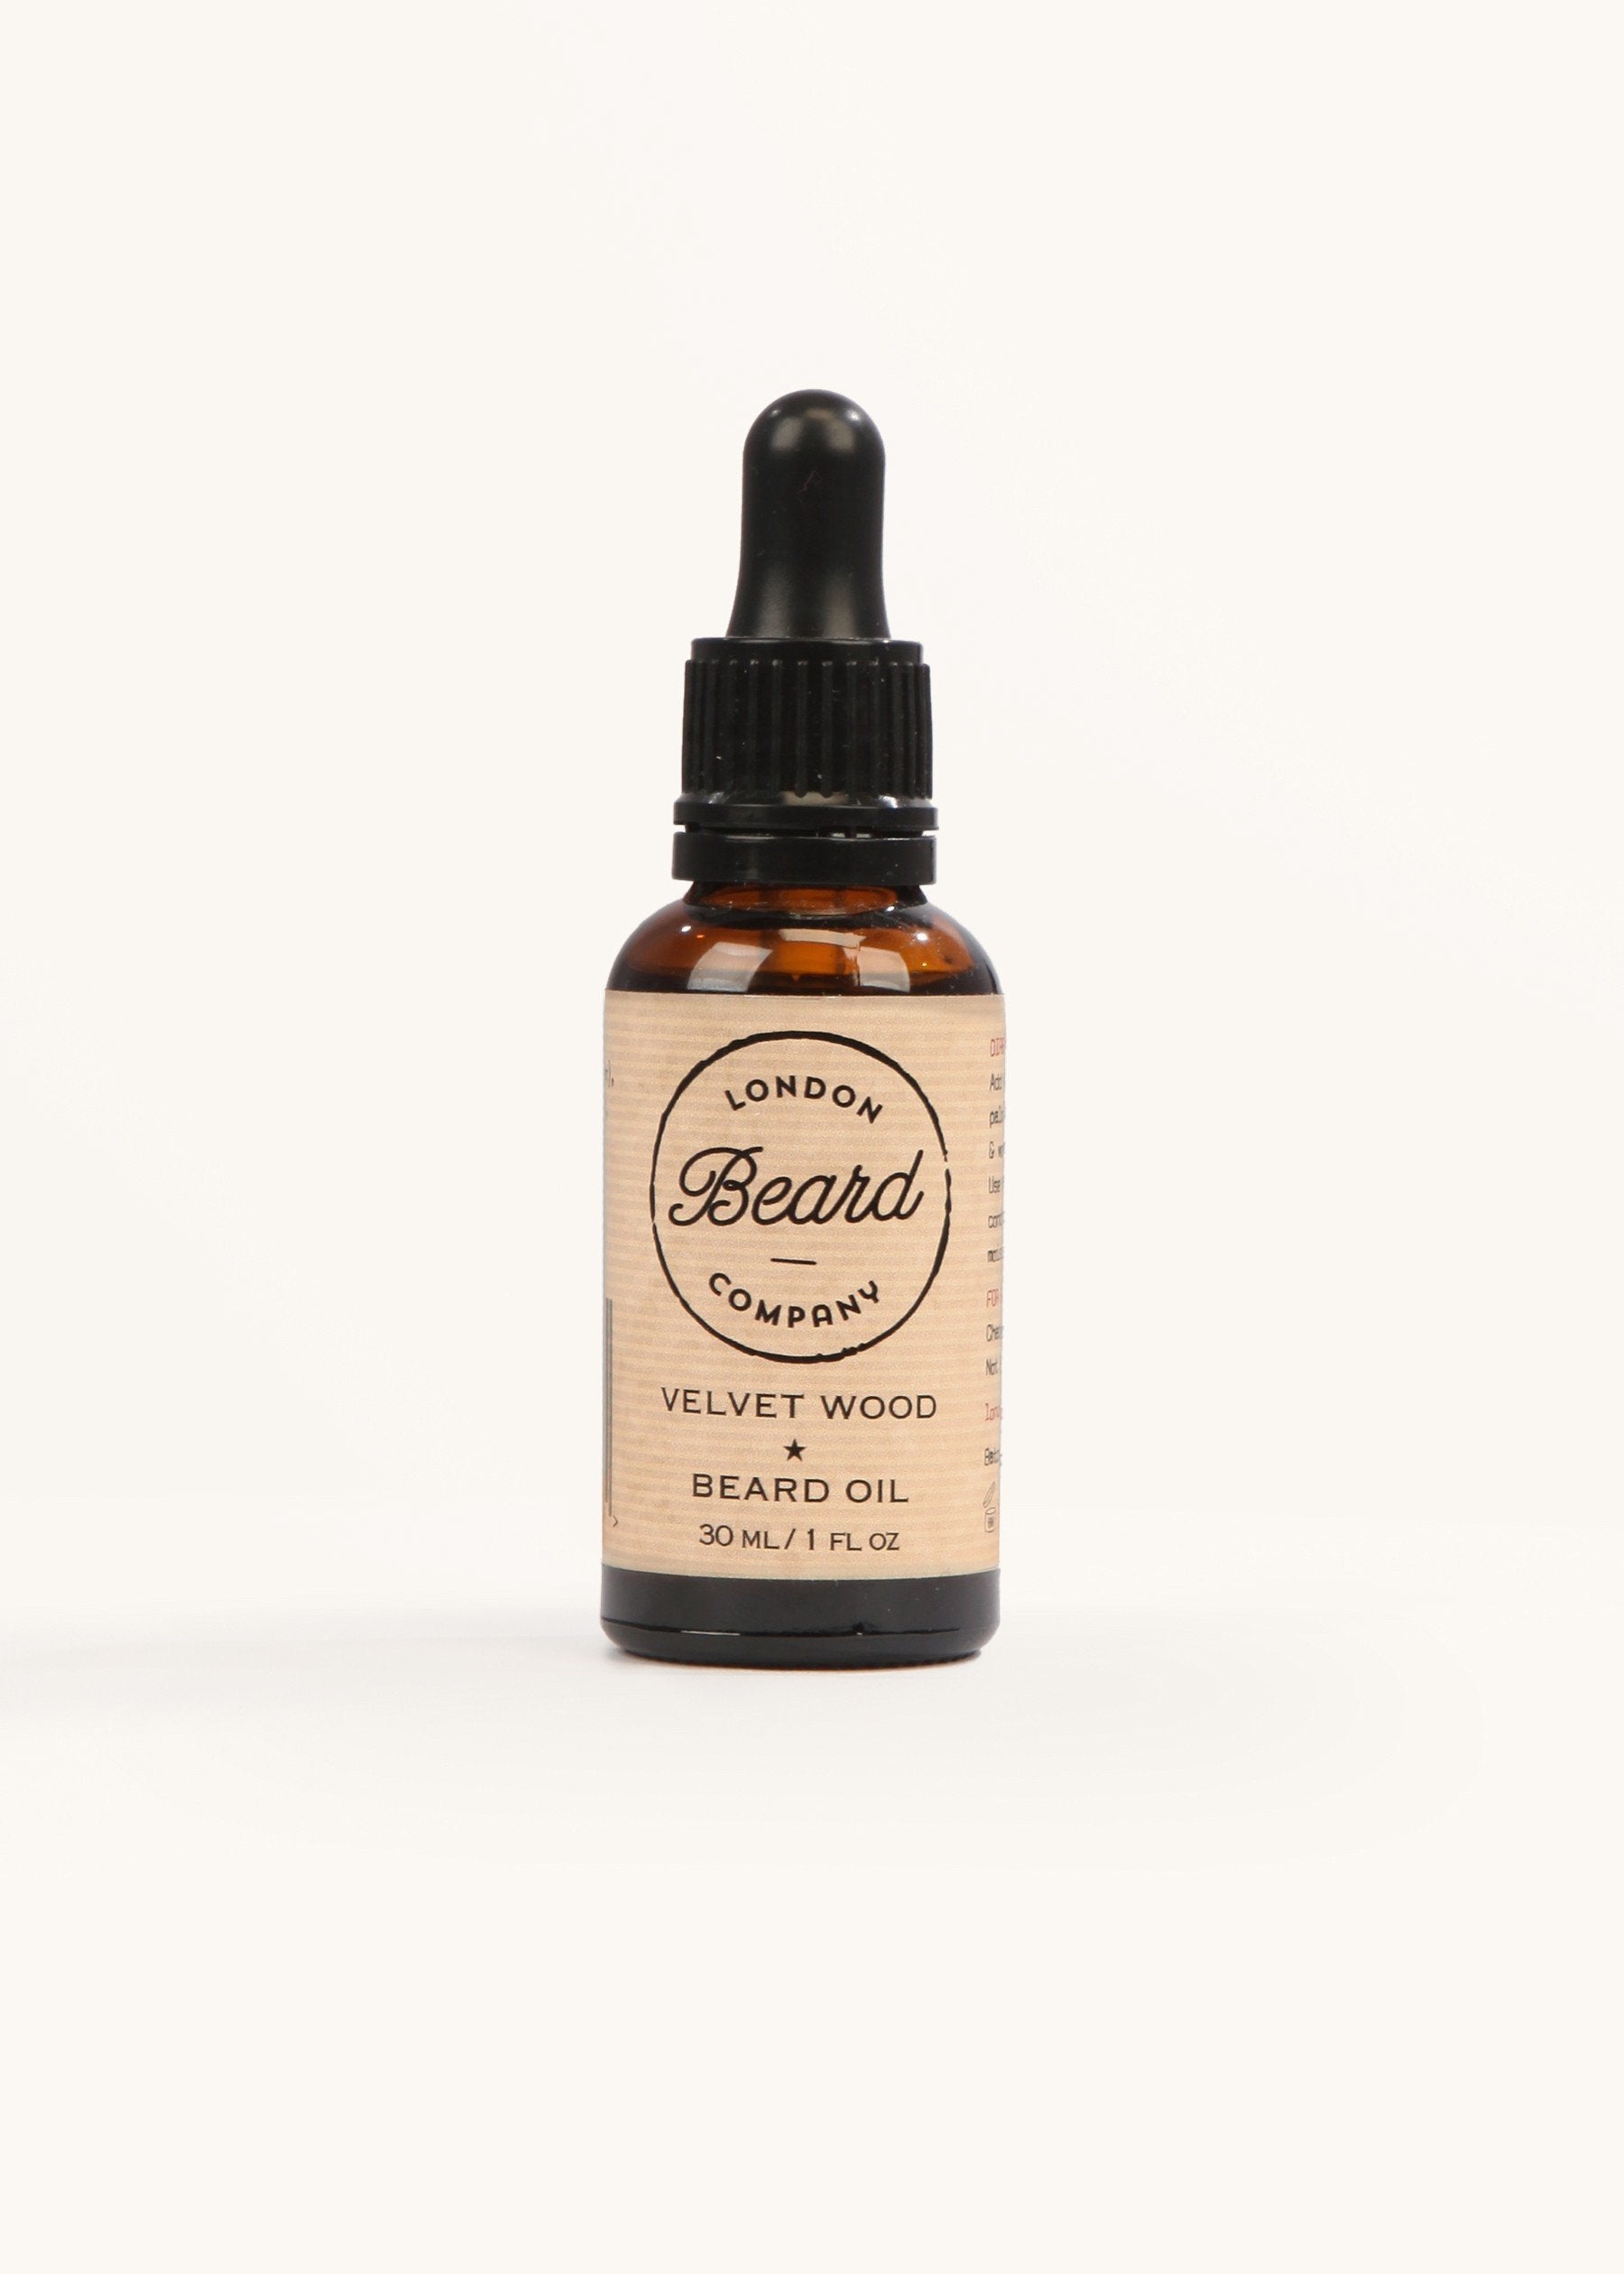 The Benefits of Our Velvet Wood Beard Oil